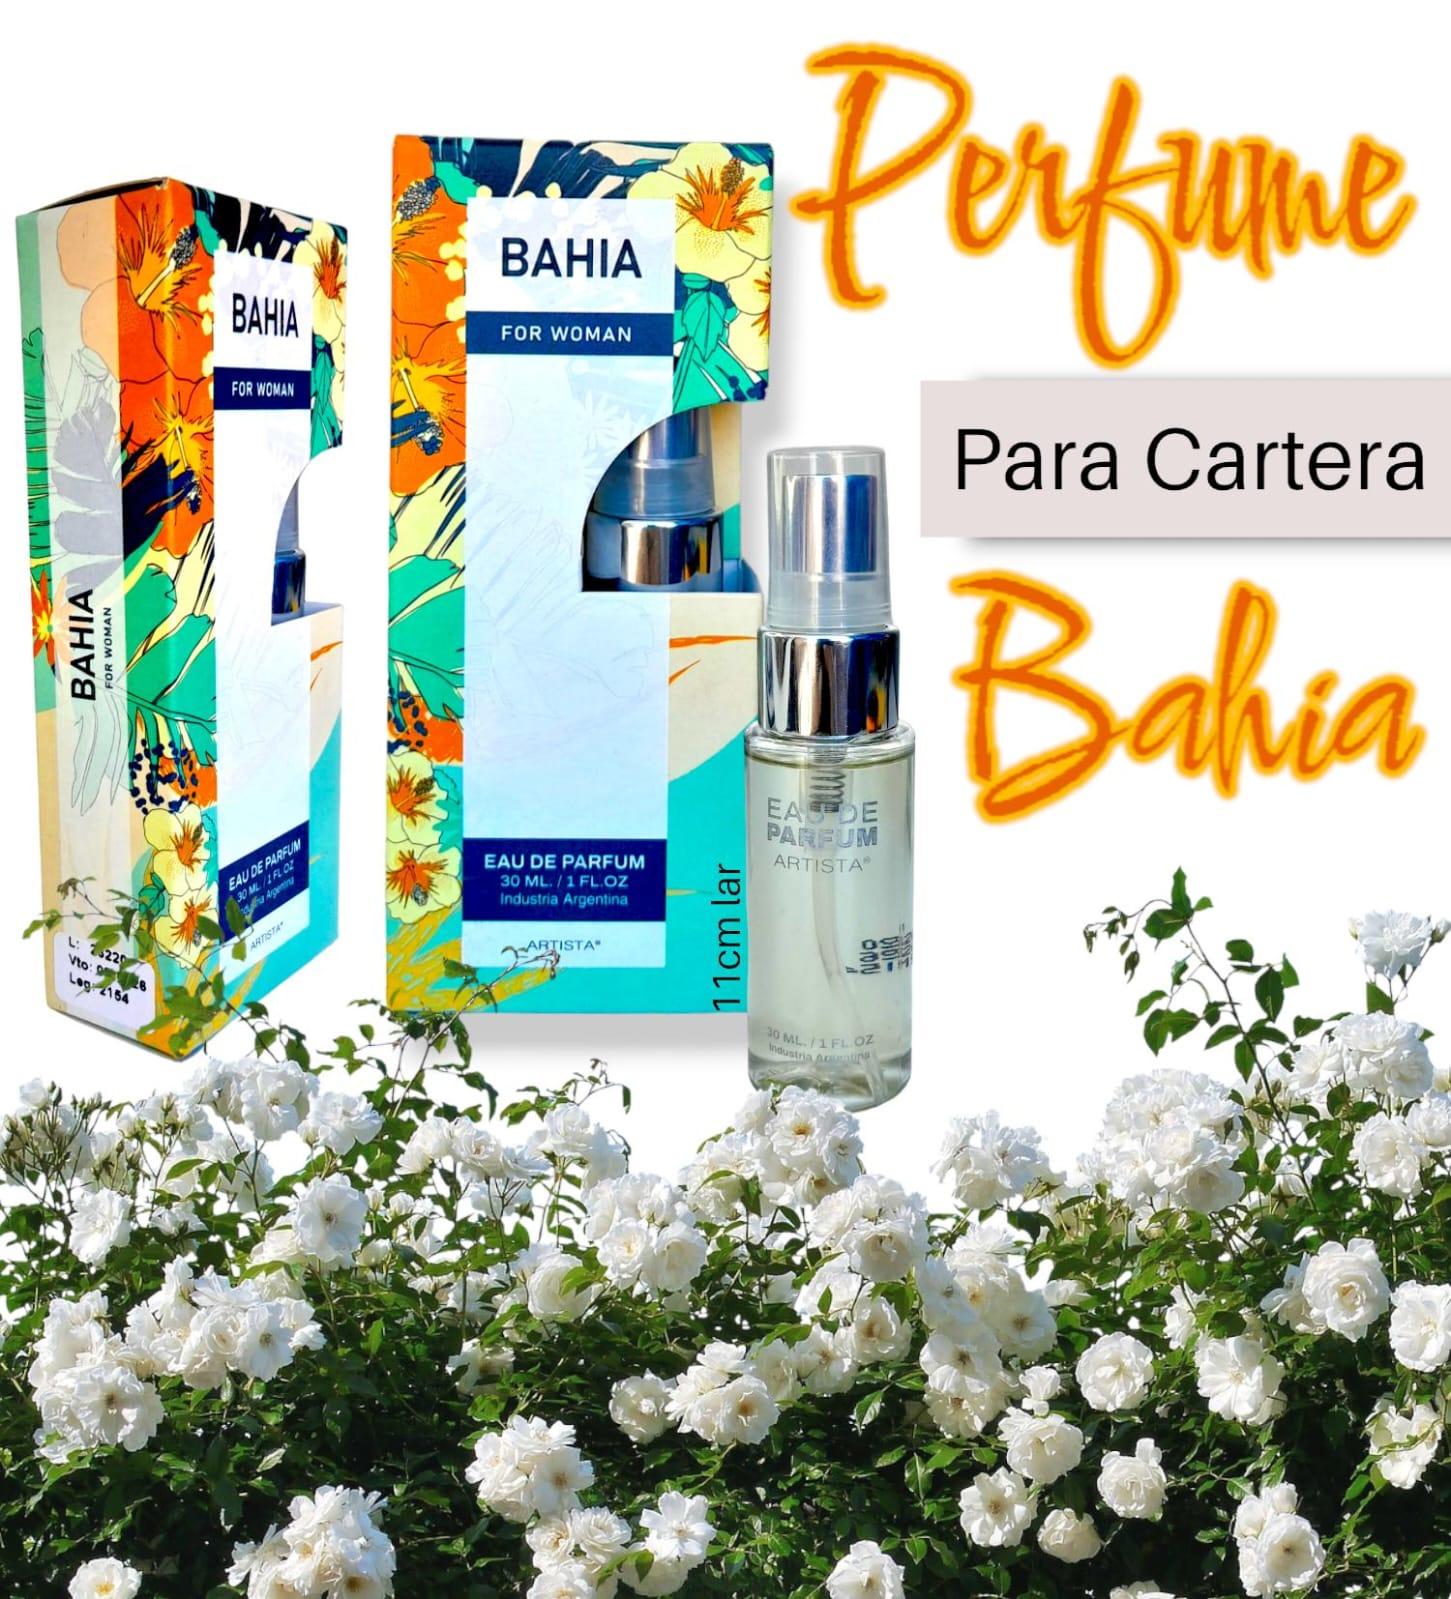 Perfume de Cartera Artista  BAHIA x 30ml